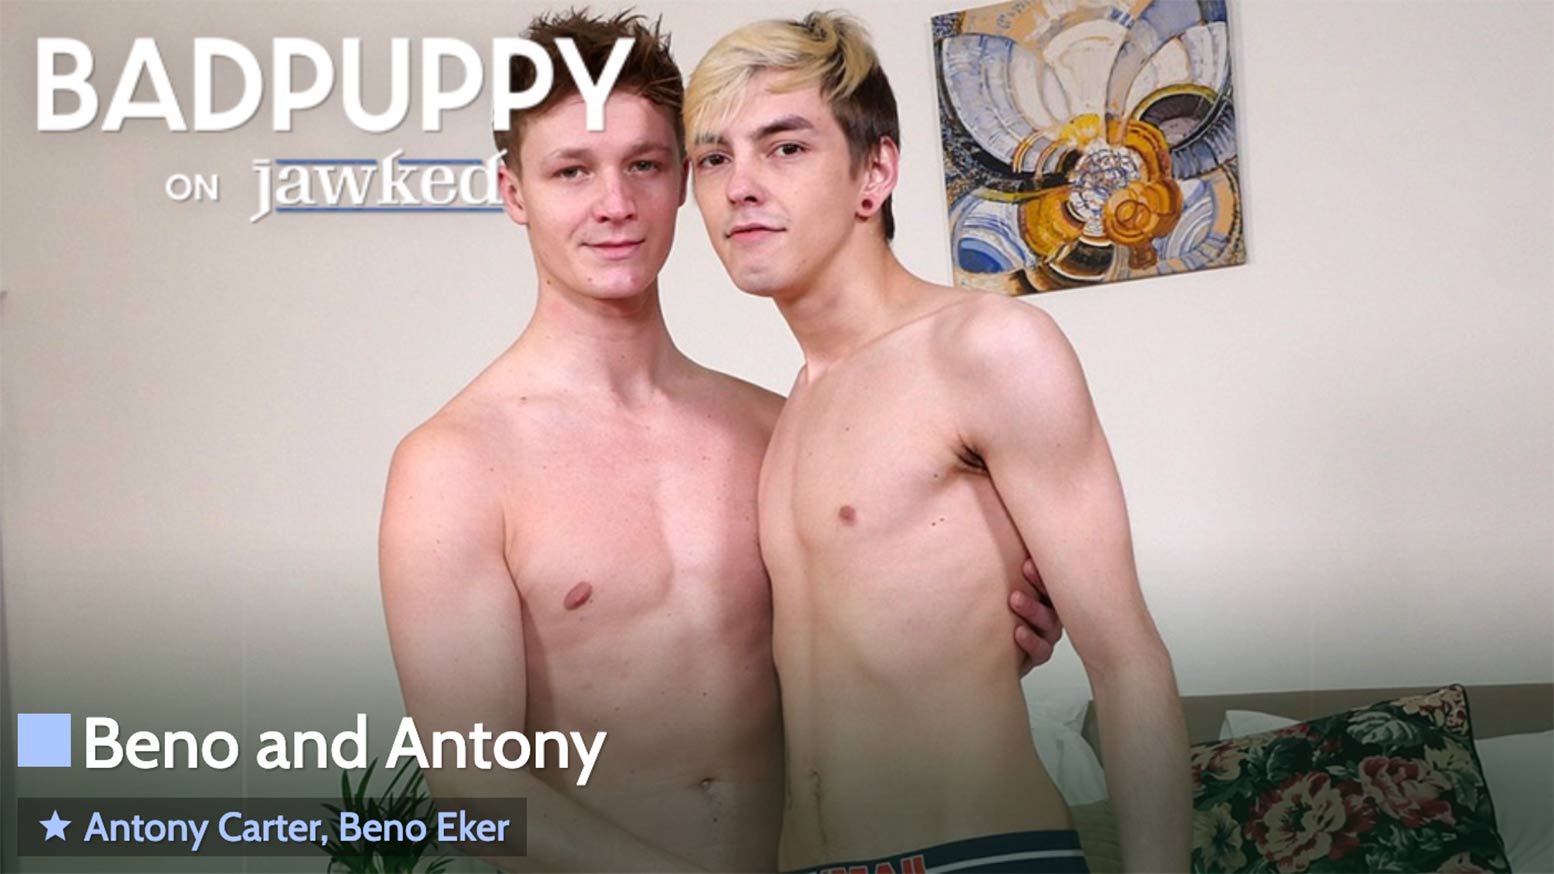 Beno and Antony